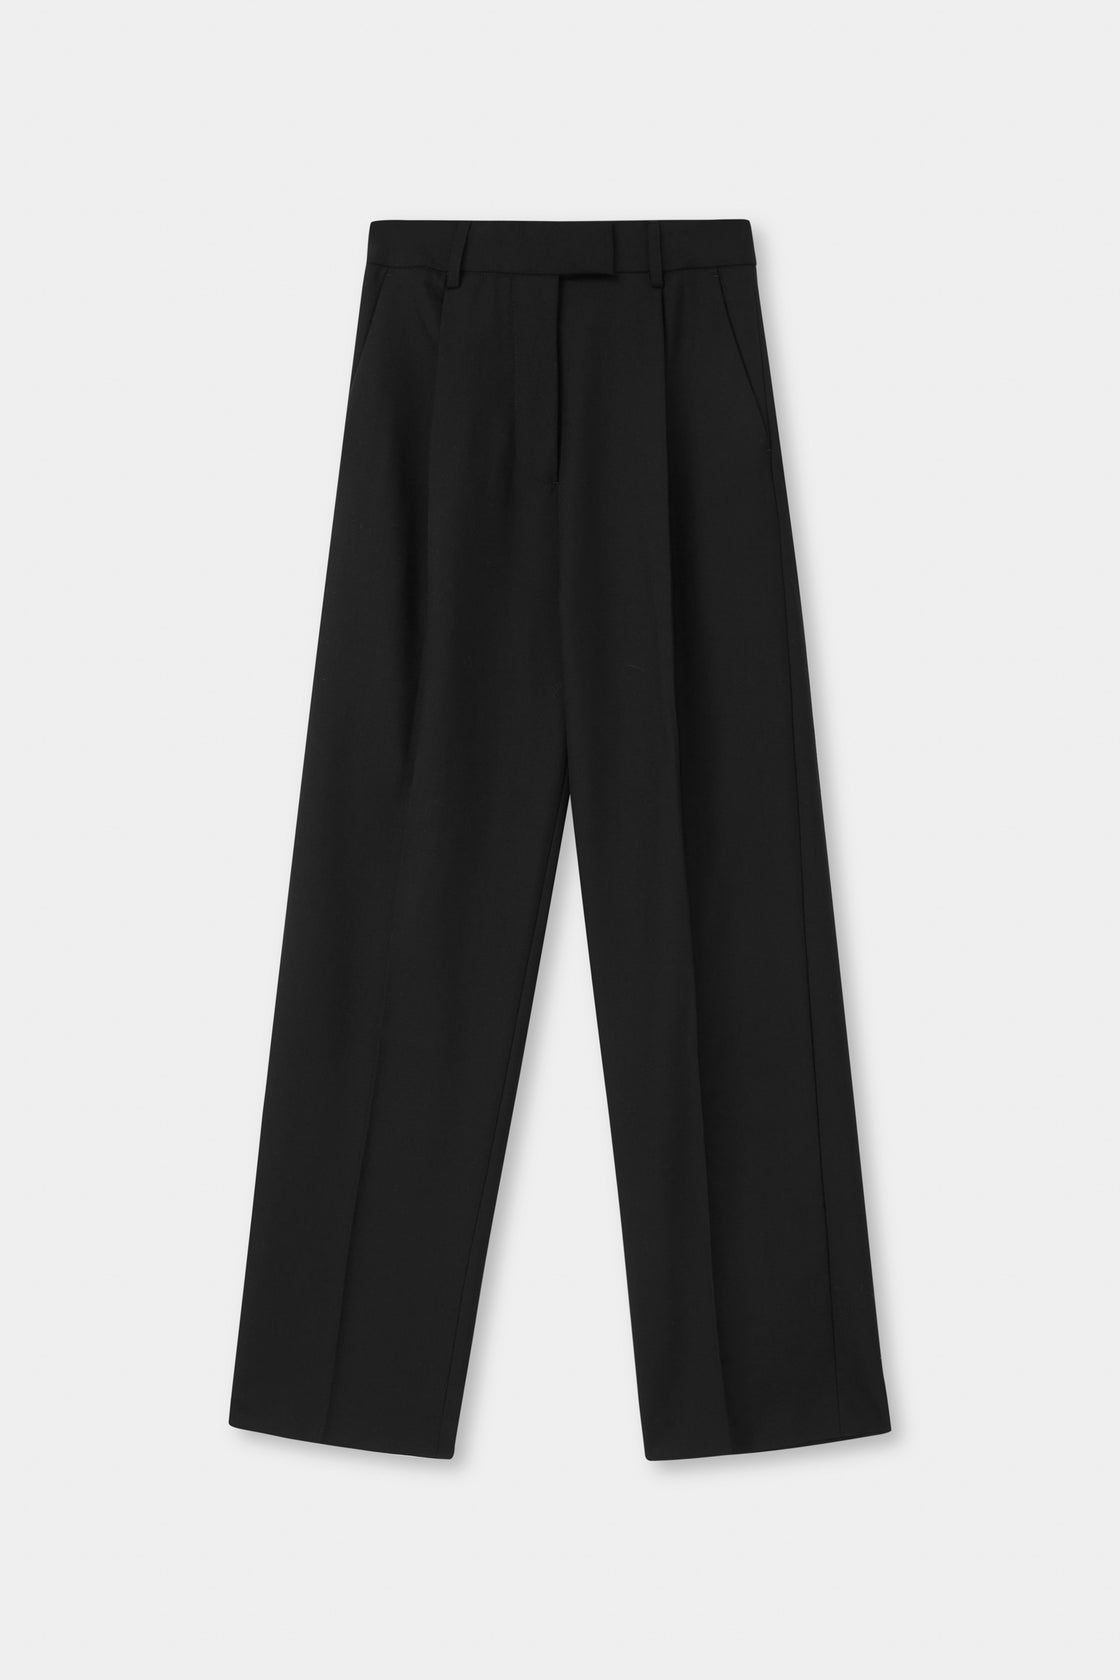 Maeve Suit Trouser - Black